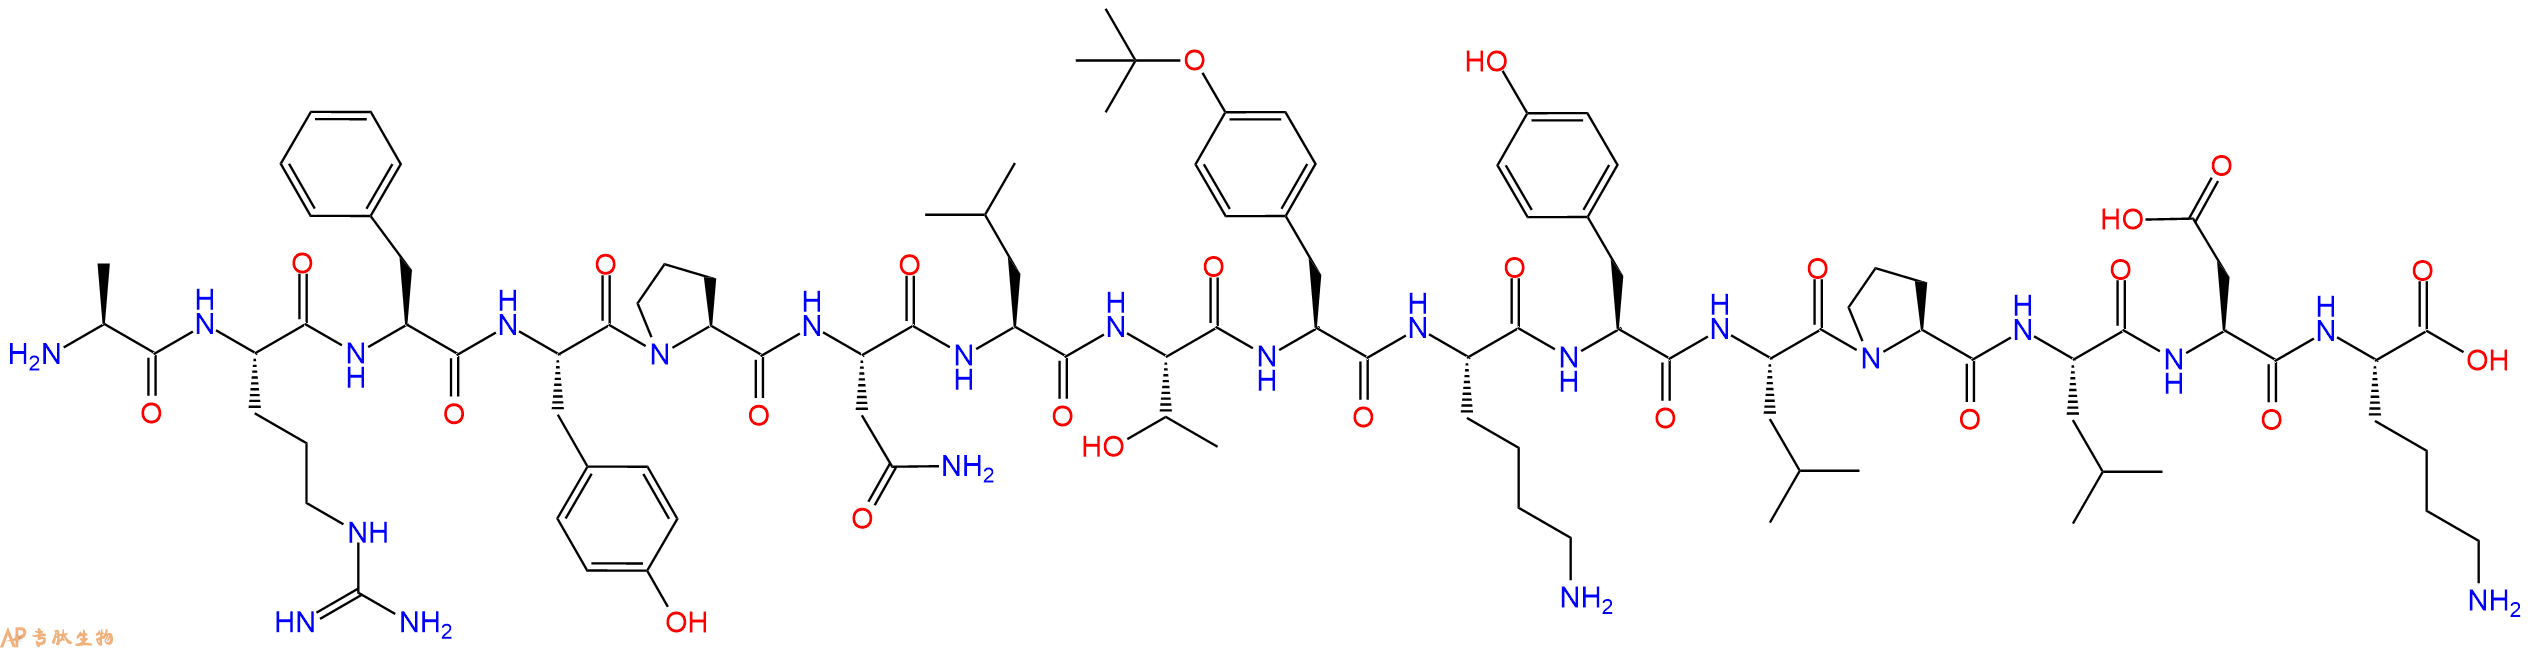 专肽生物产品H2N-Ala-Arg-Phe-Tyr-Pro-Asn-Leu-Thr-Tyr(tBu)-Lys-T